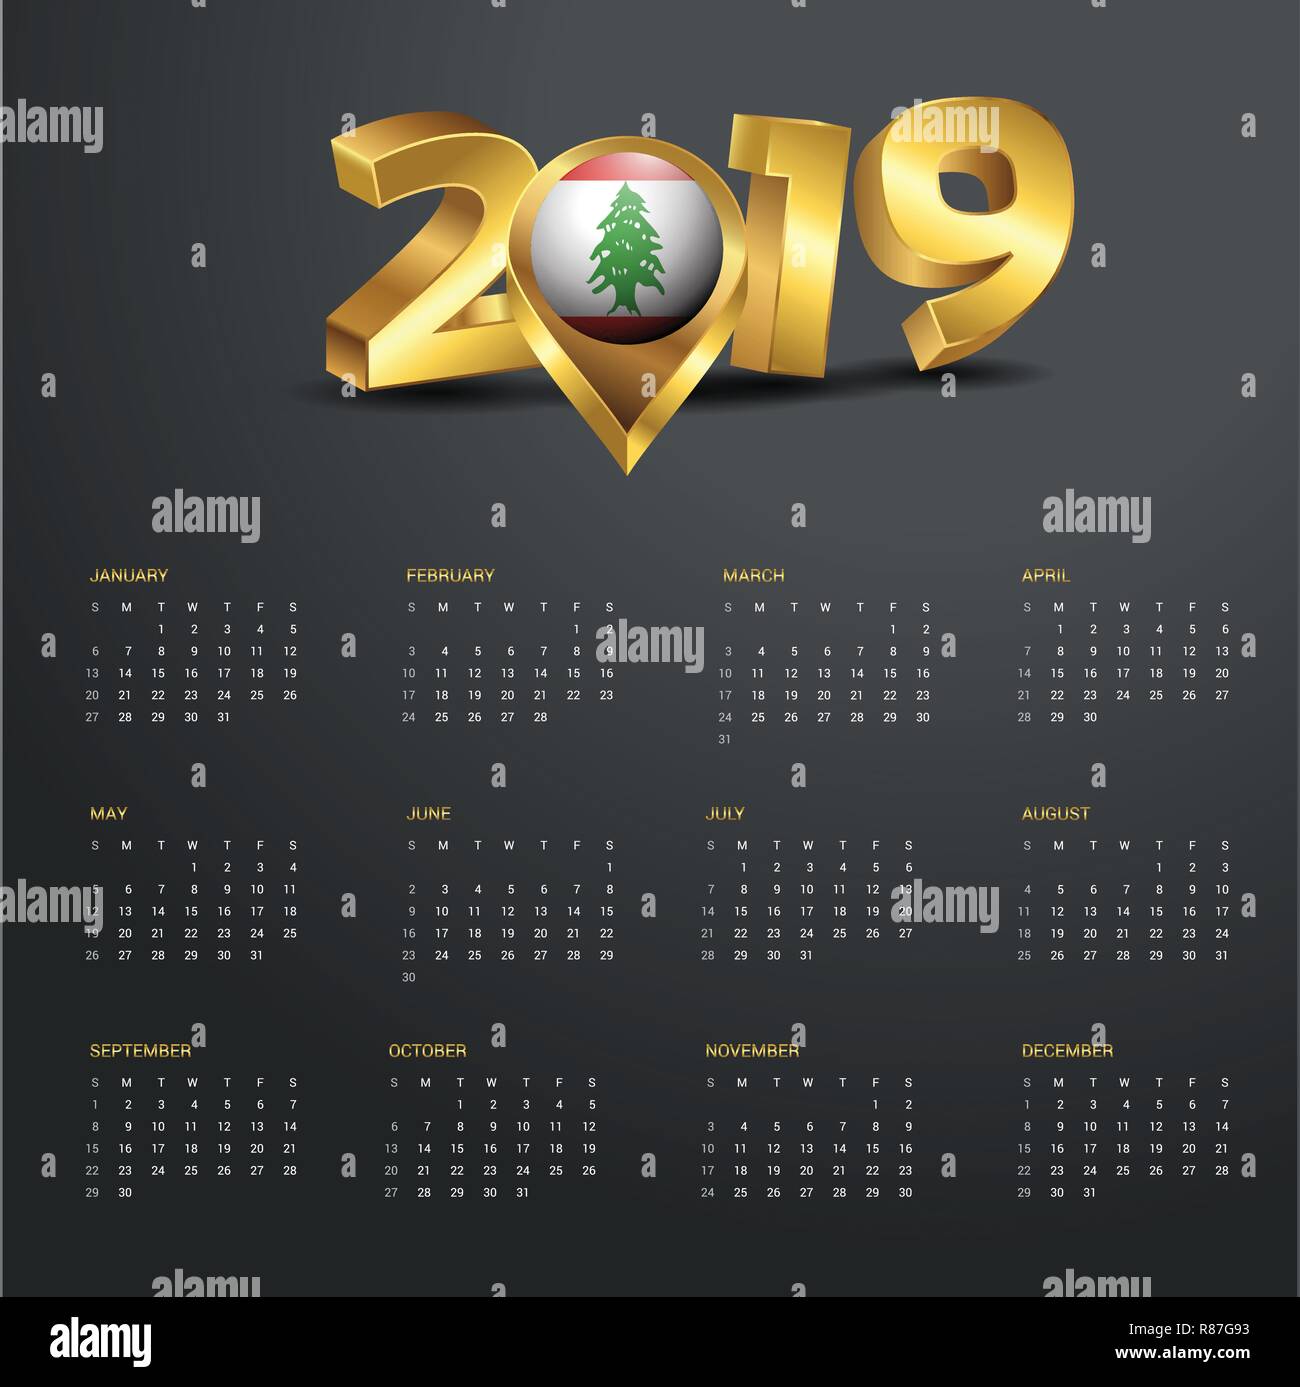 2019 Calendar Template. Lebanon Country Map Golden Typography Header Stock Vector